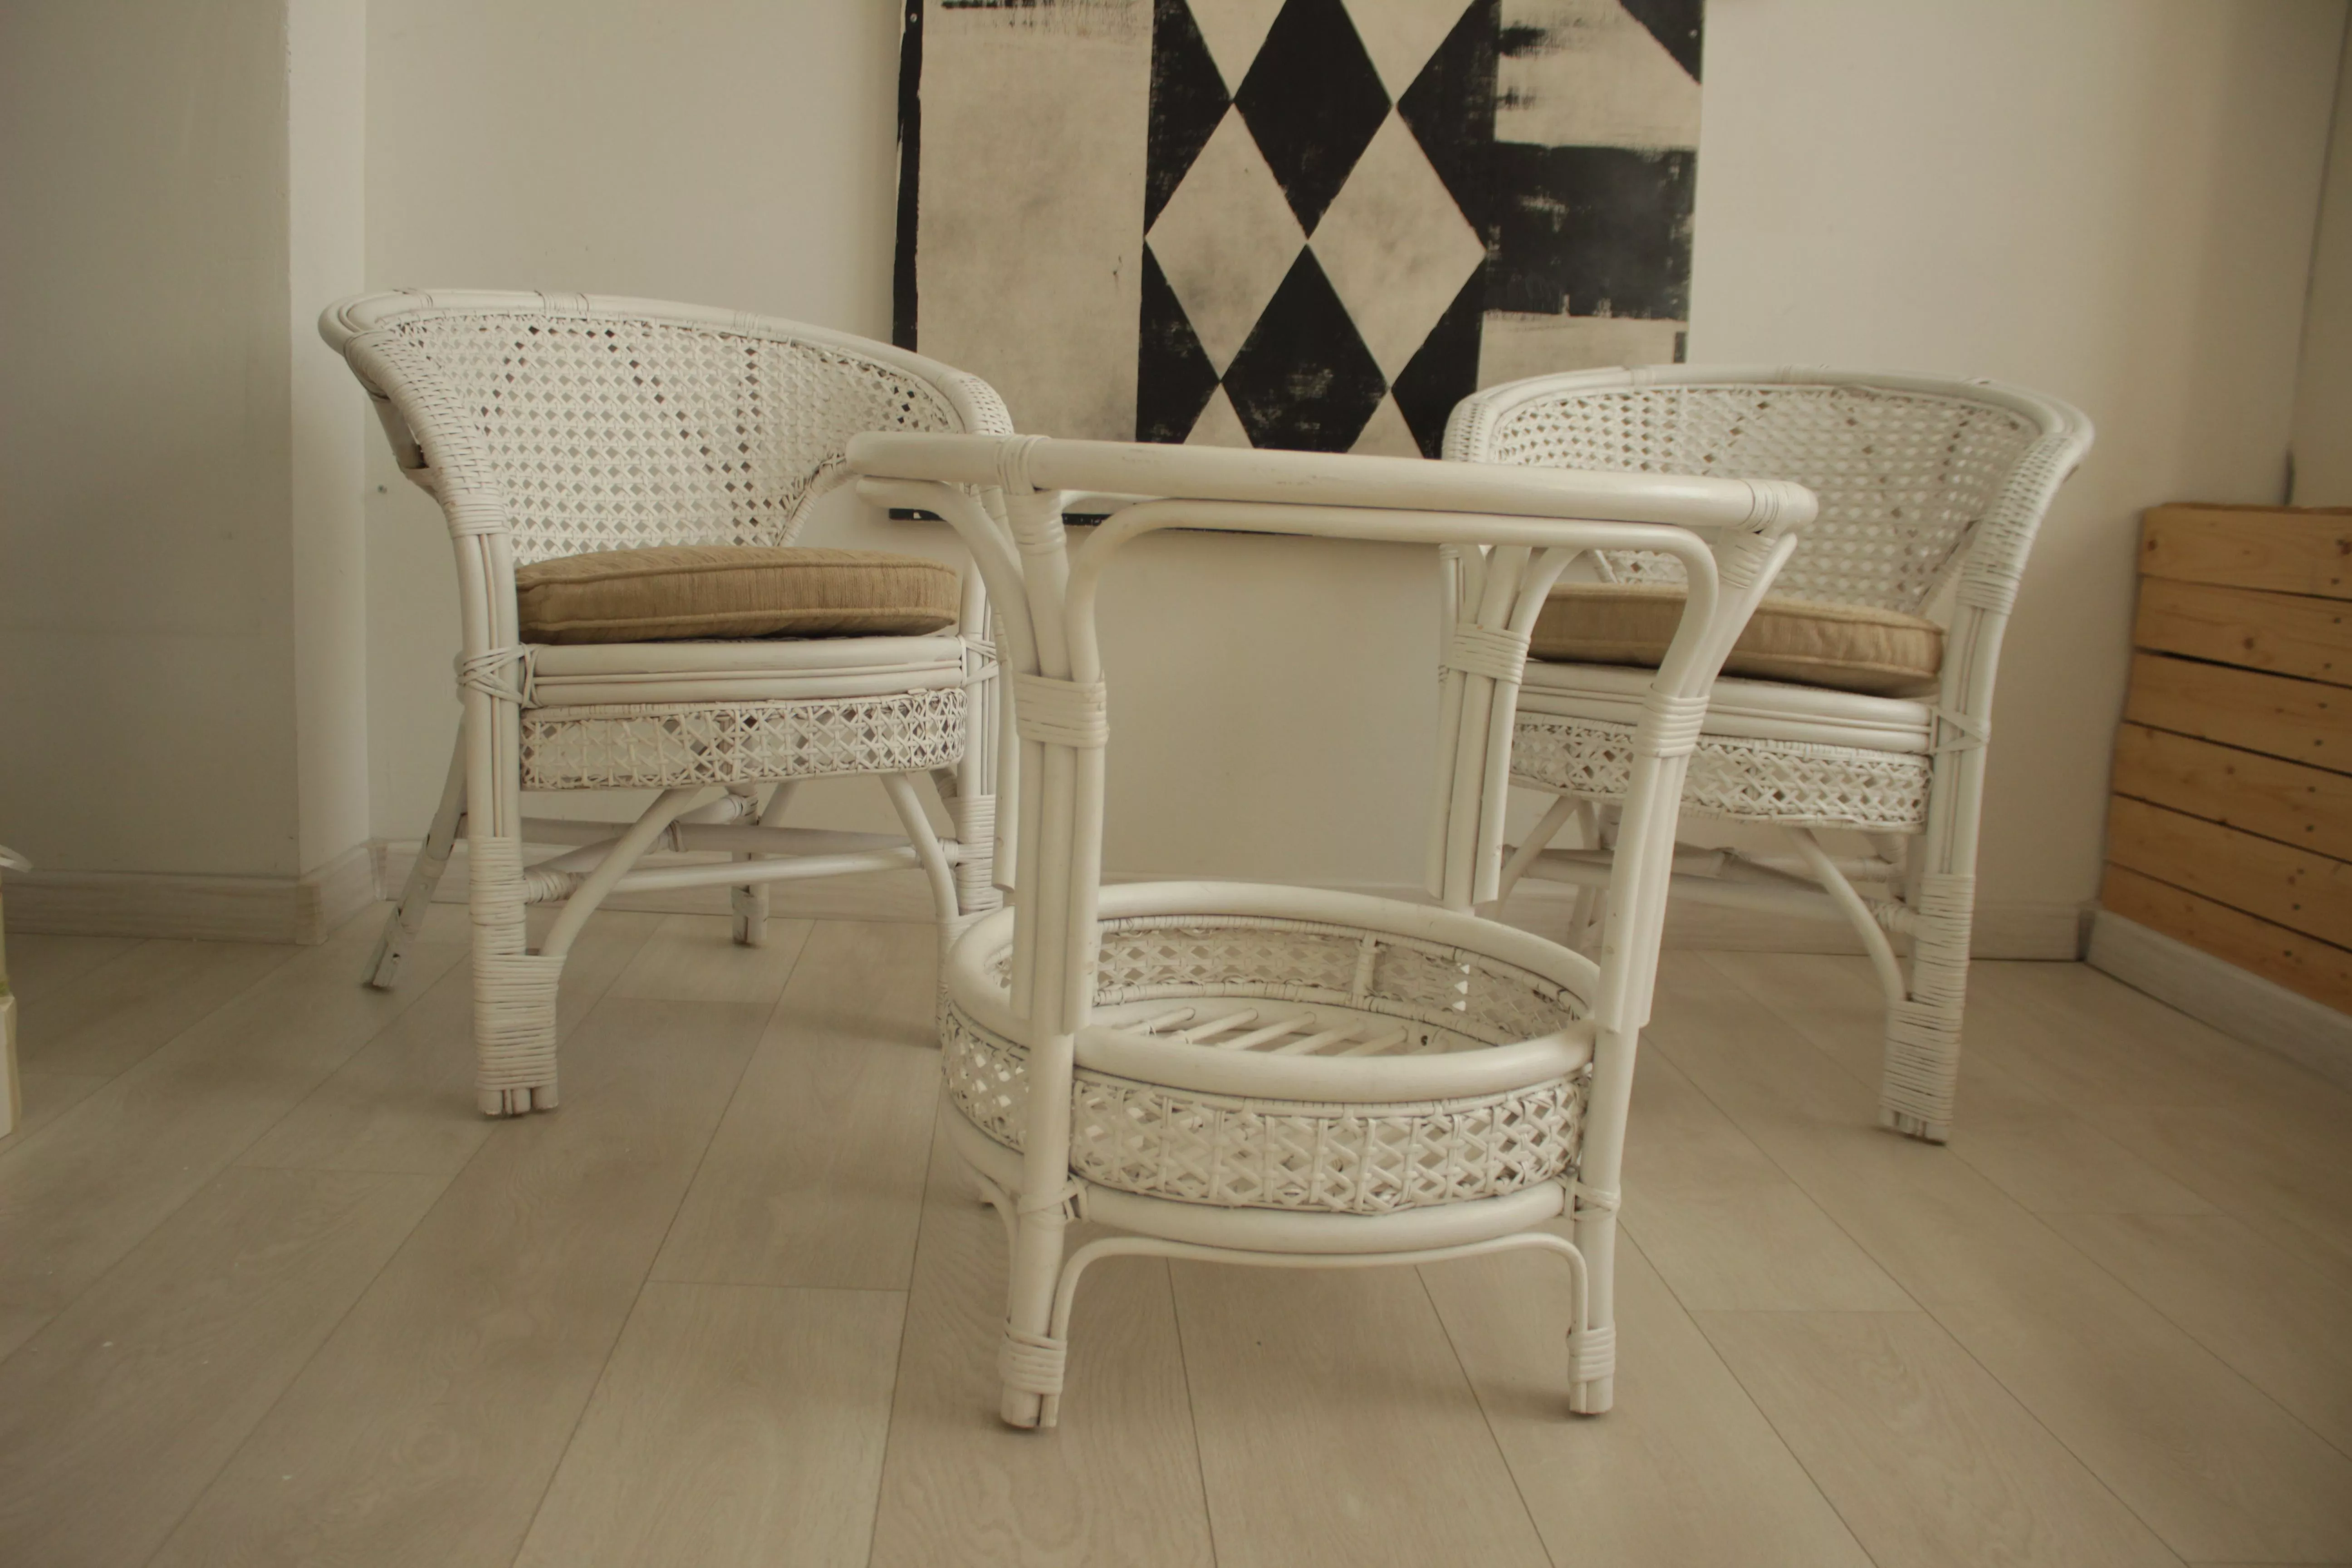 Комплект мебели из ротанга Пеланги 02 15 с 2х местным диваном и овальным столом белый матовый